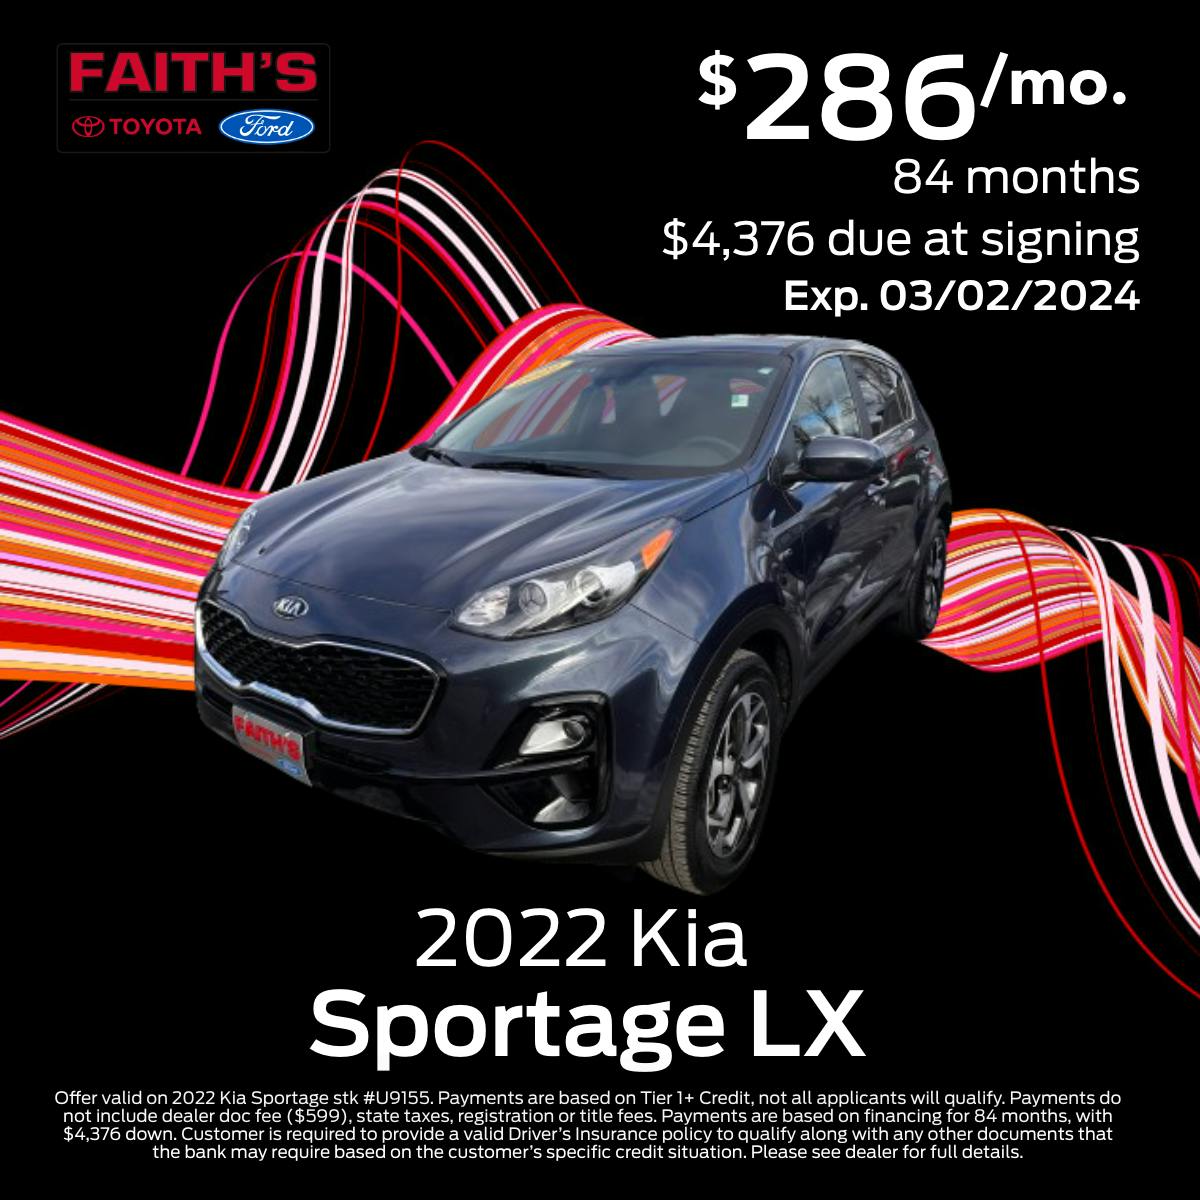 2022 Kia Sportage LX Purchase Offer | Faiths Ford